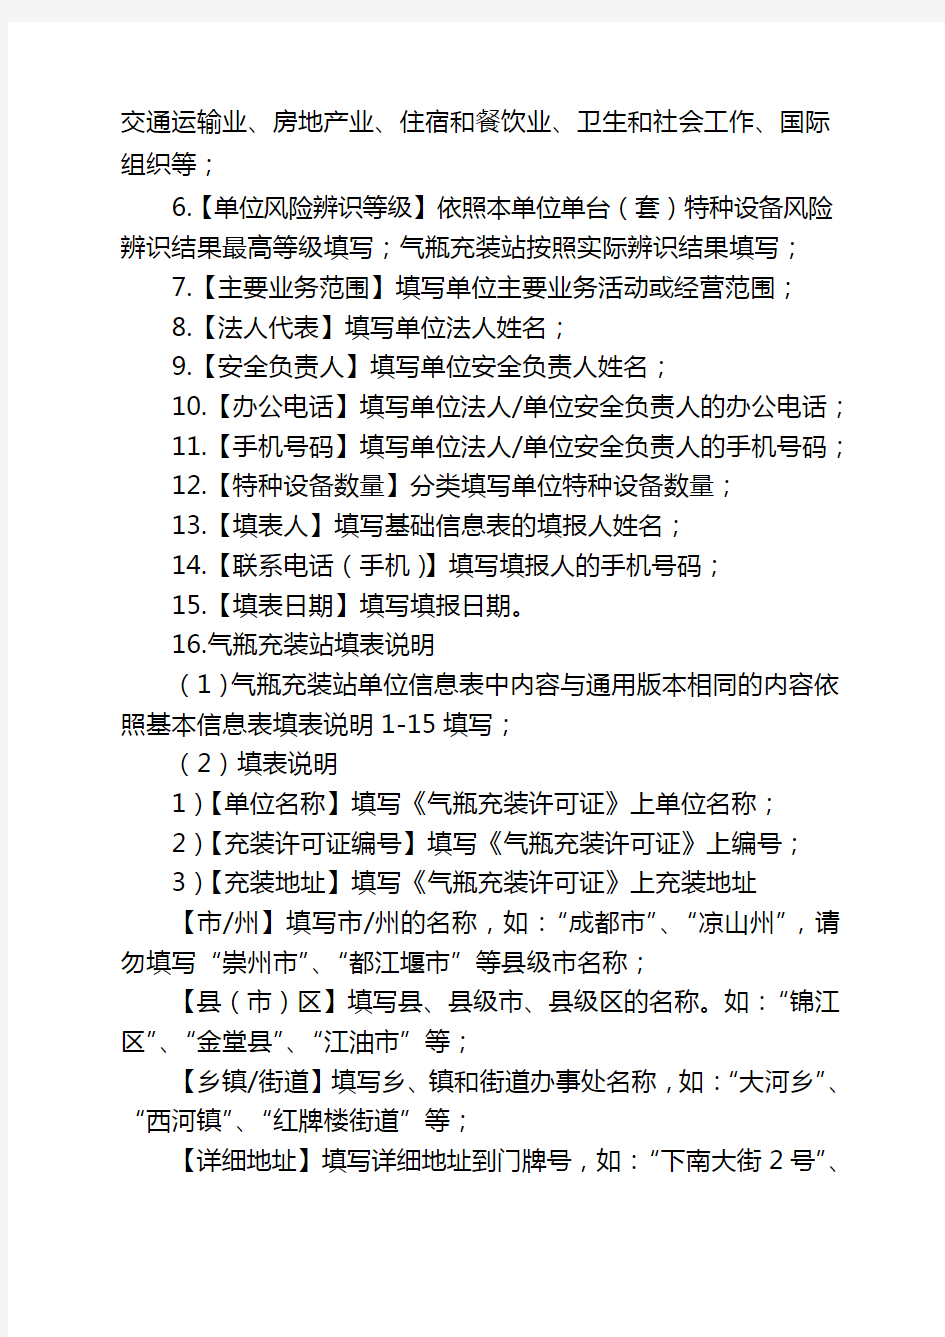 《四川省特种设备安全风险辨识清单》填表说明